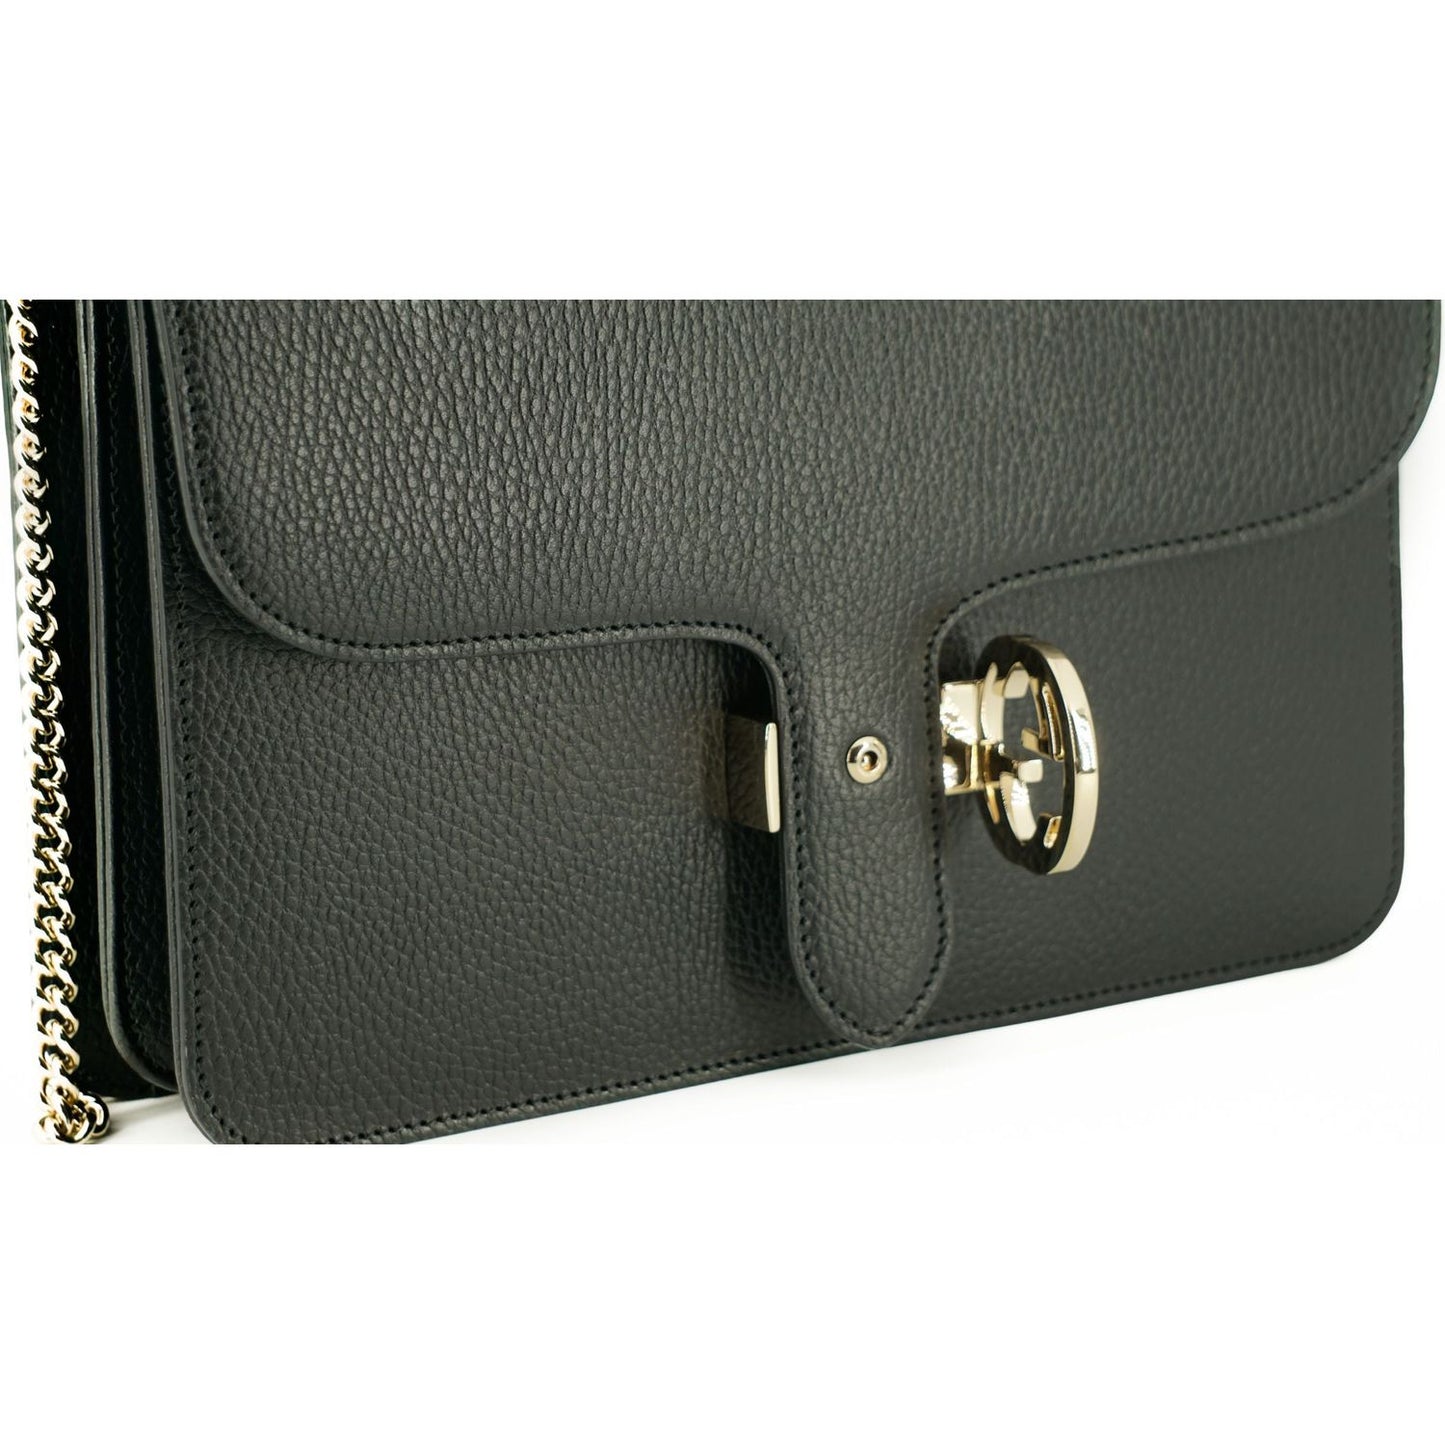 Gucci Elegant Calf Leather Shoulder Bag black-calf-leather-dollar-shoulder-bag-2 D50040-10-scaled-cd623b5c-e3d.jpg